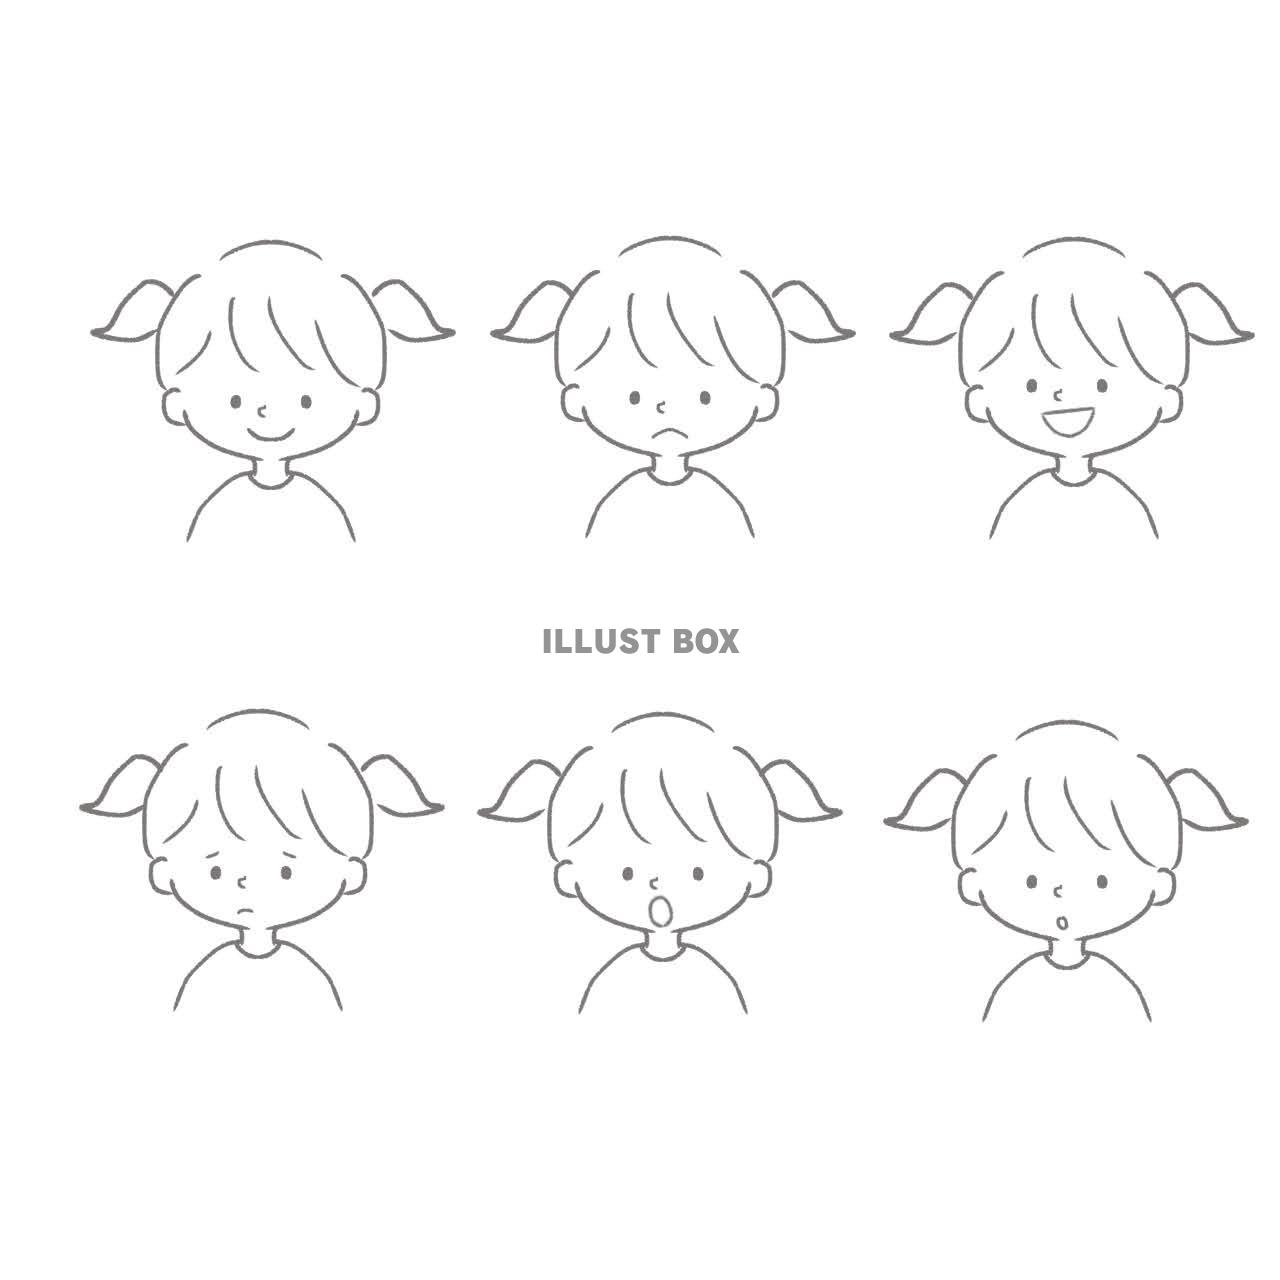 無料イラスト 手書き風のシンプルで可愛い女の子の6種類の表情セット